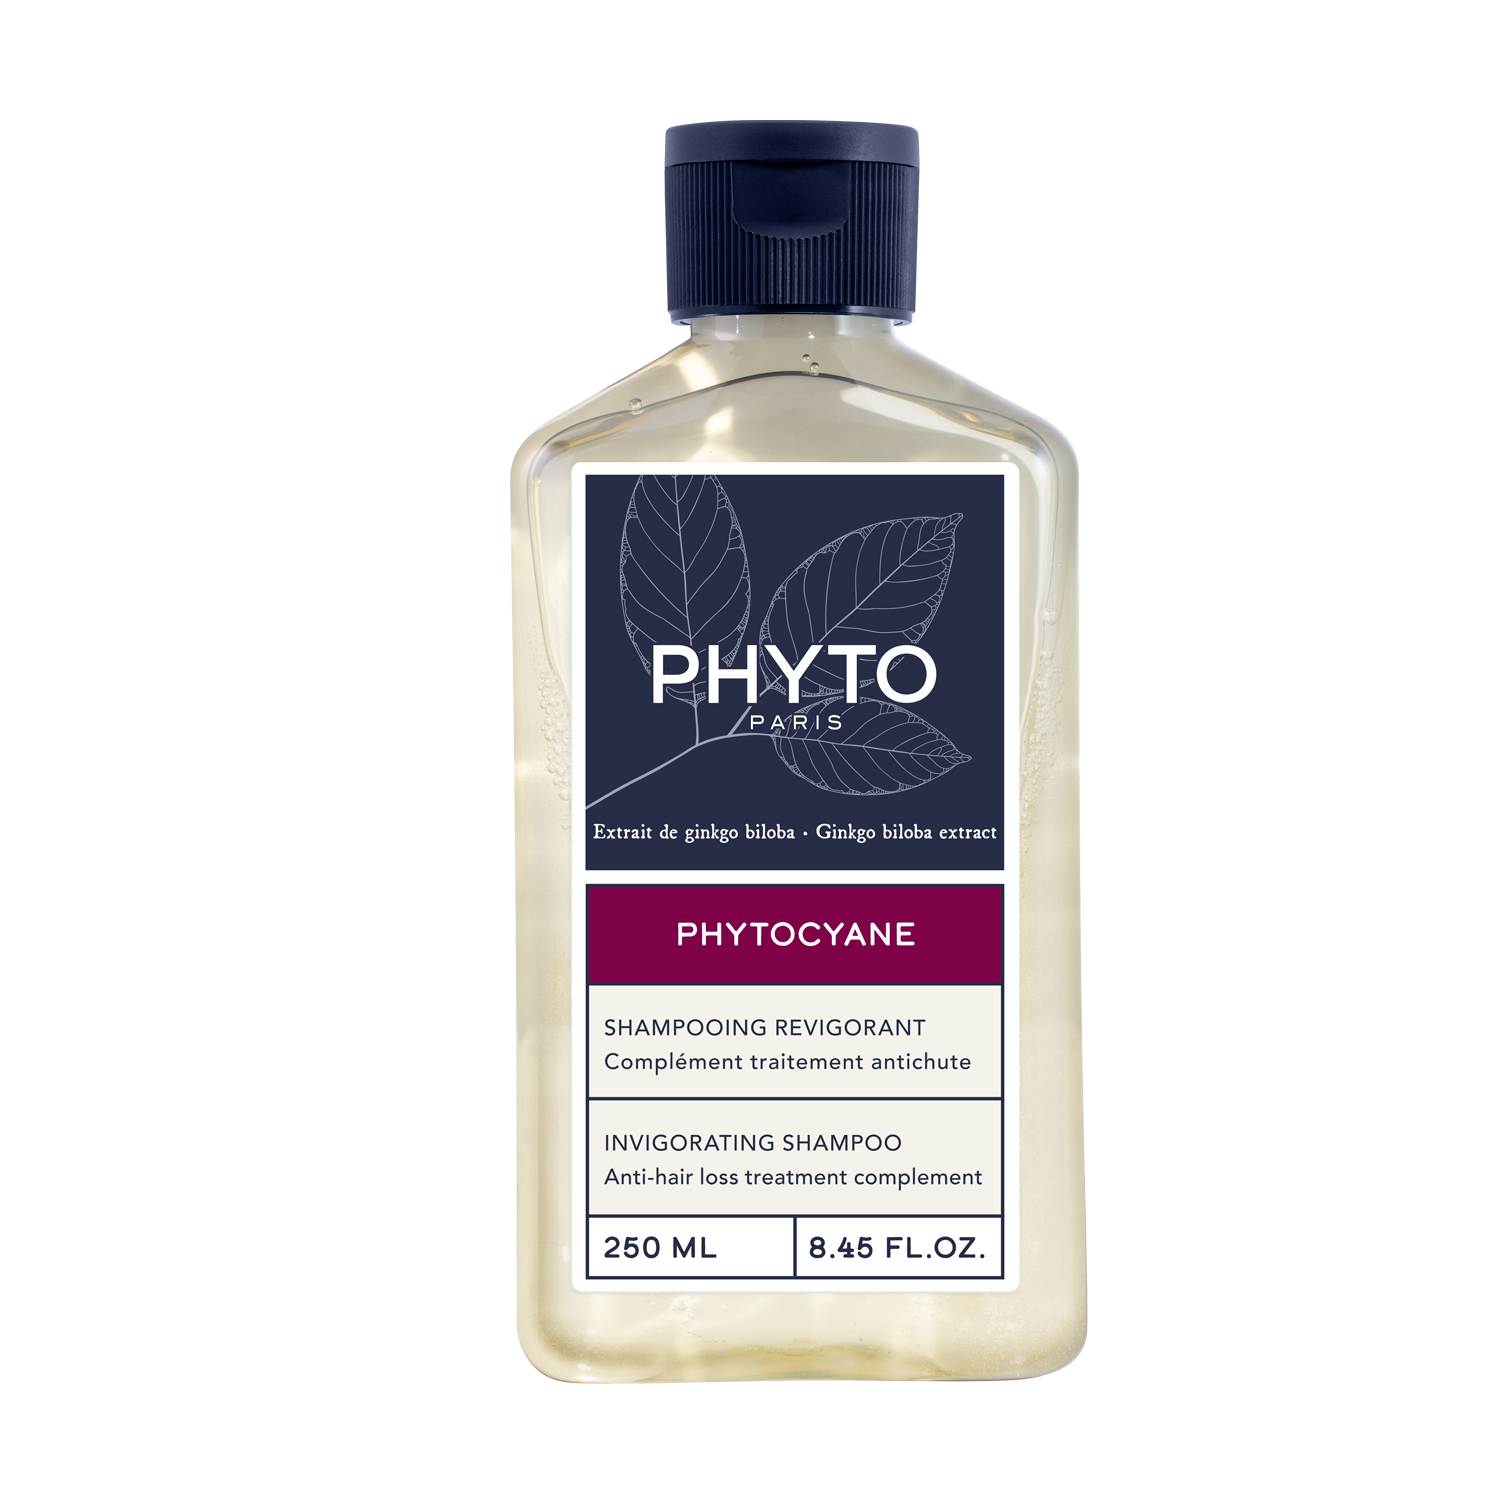 PHYTO PHYTOCYANE-MEN мужской укрепляющий шампунь для волос 200мл